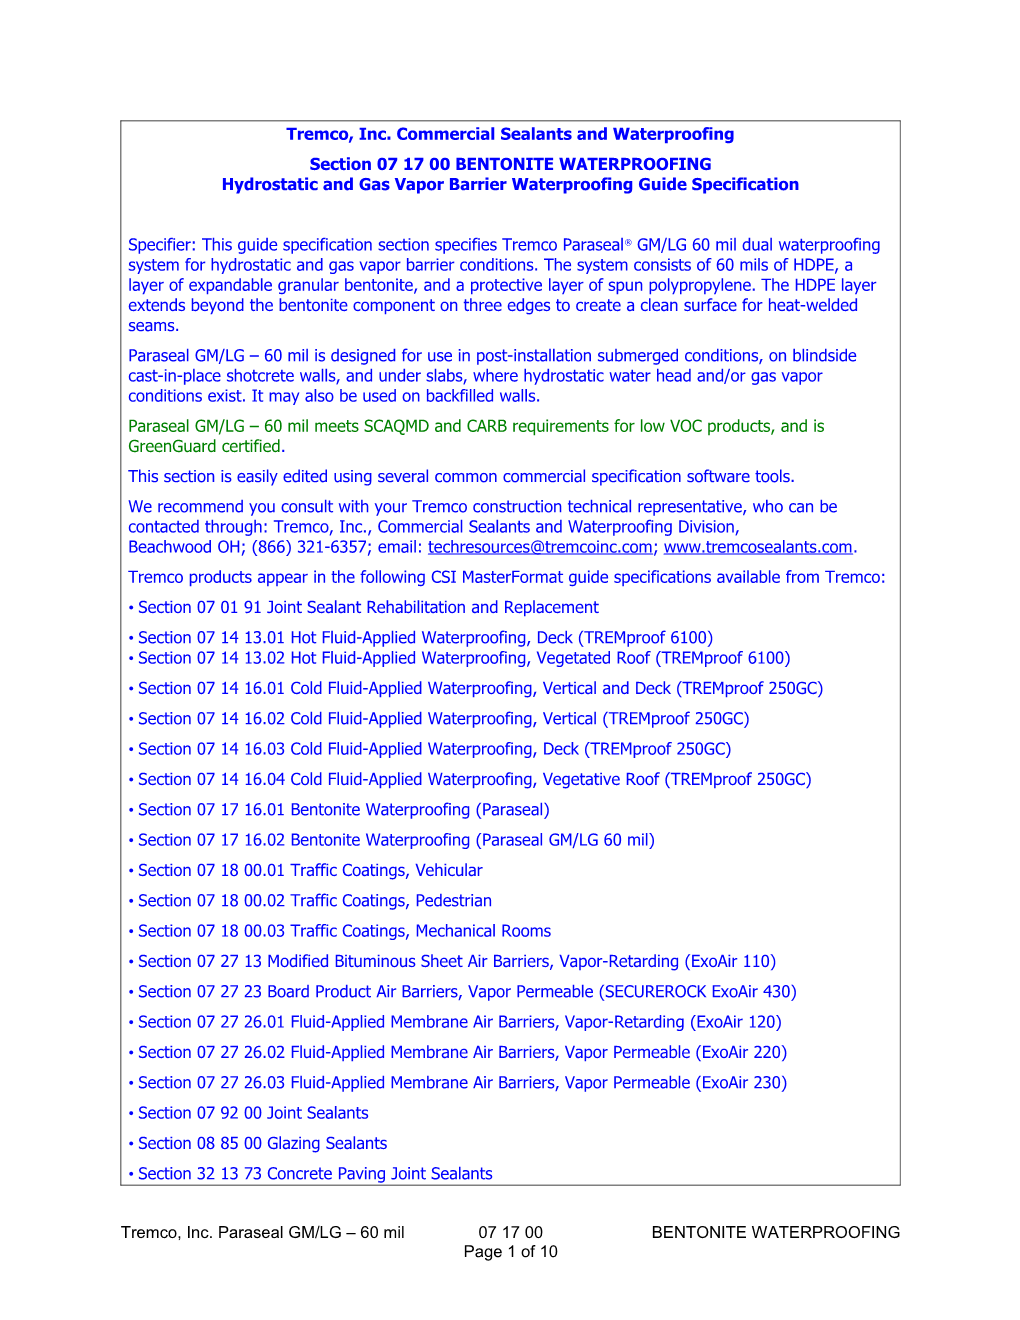 Section 071413 Hot Fluid-Applied Waterproofing